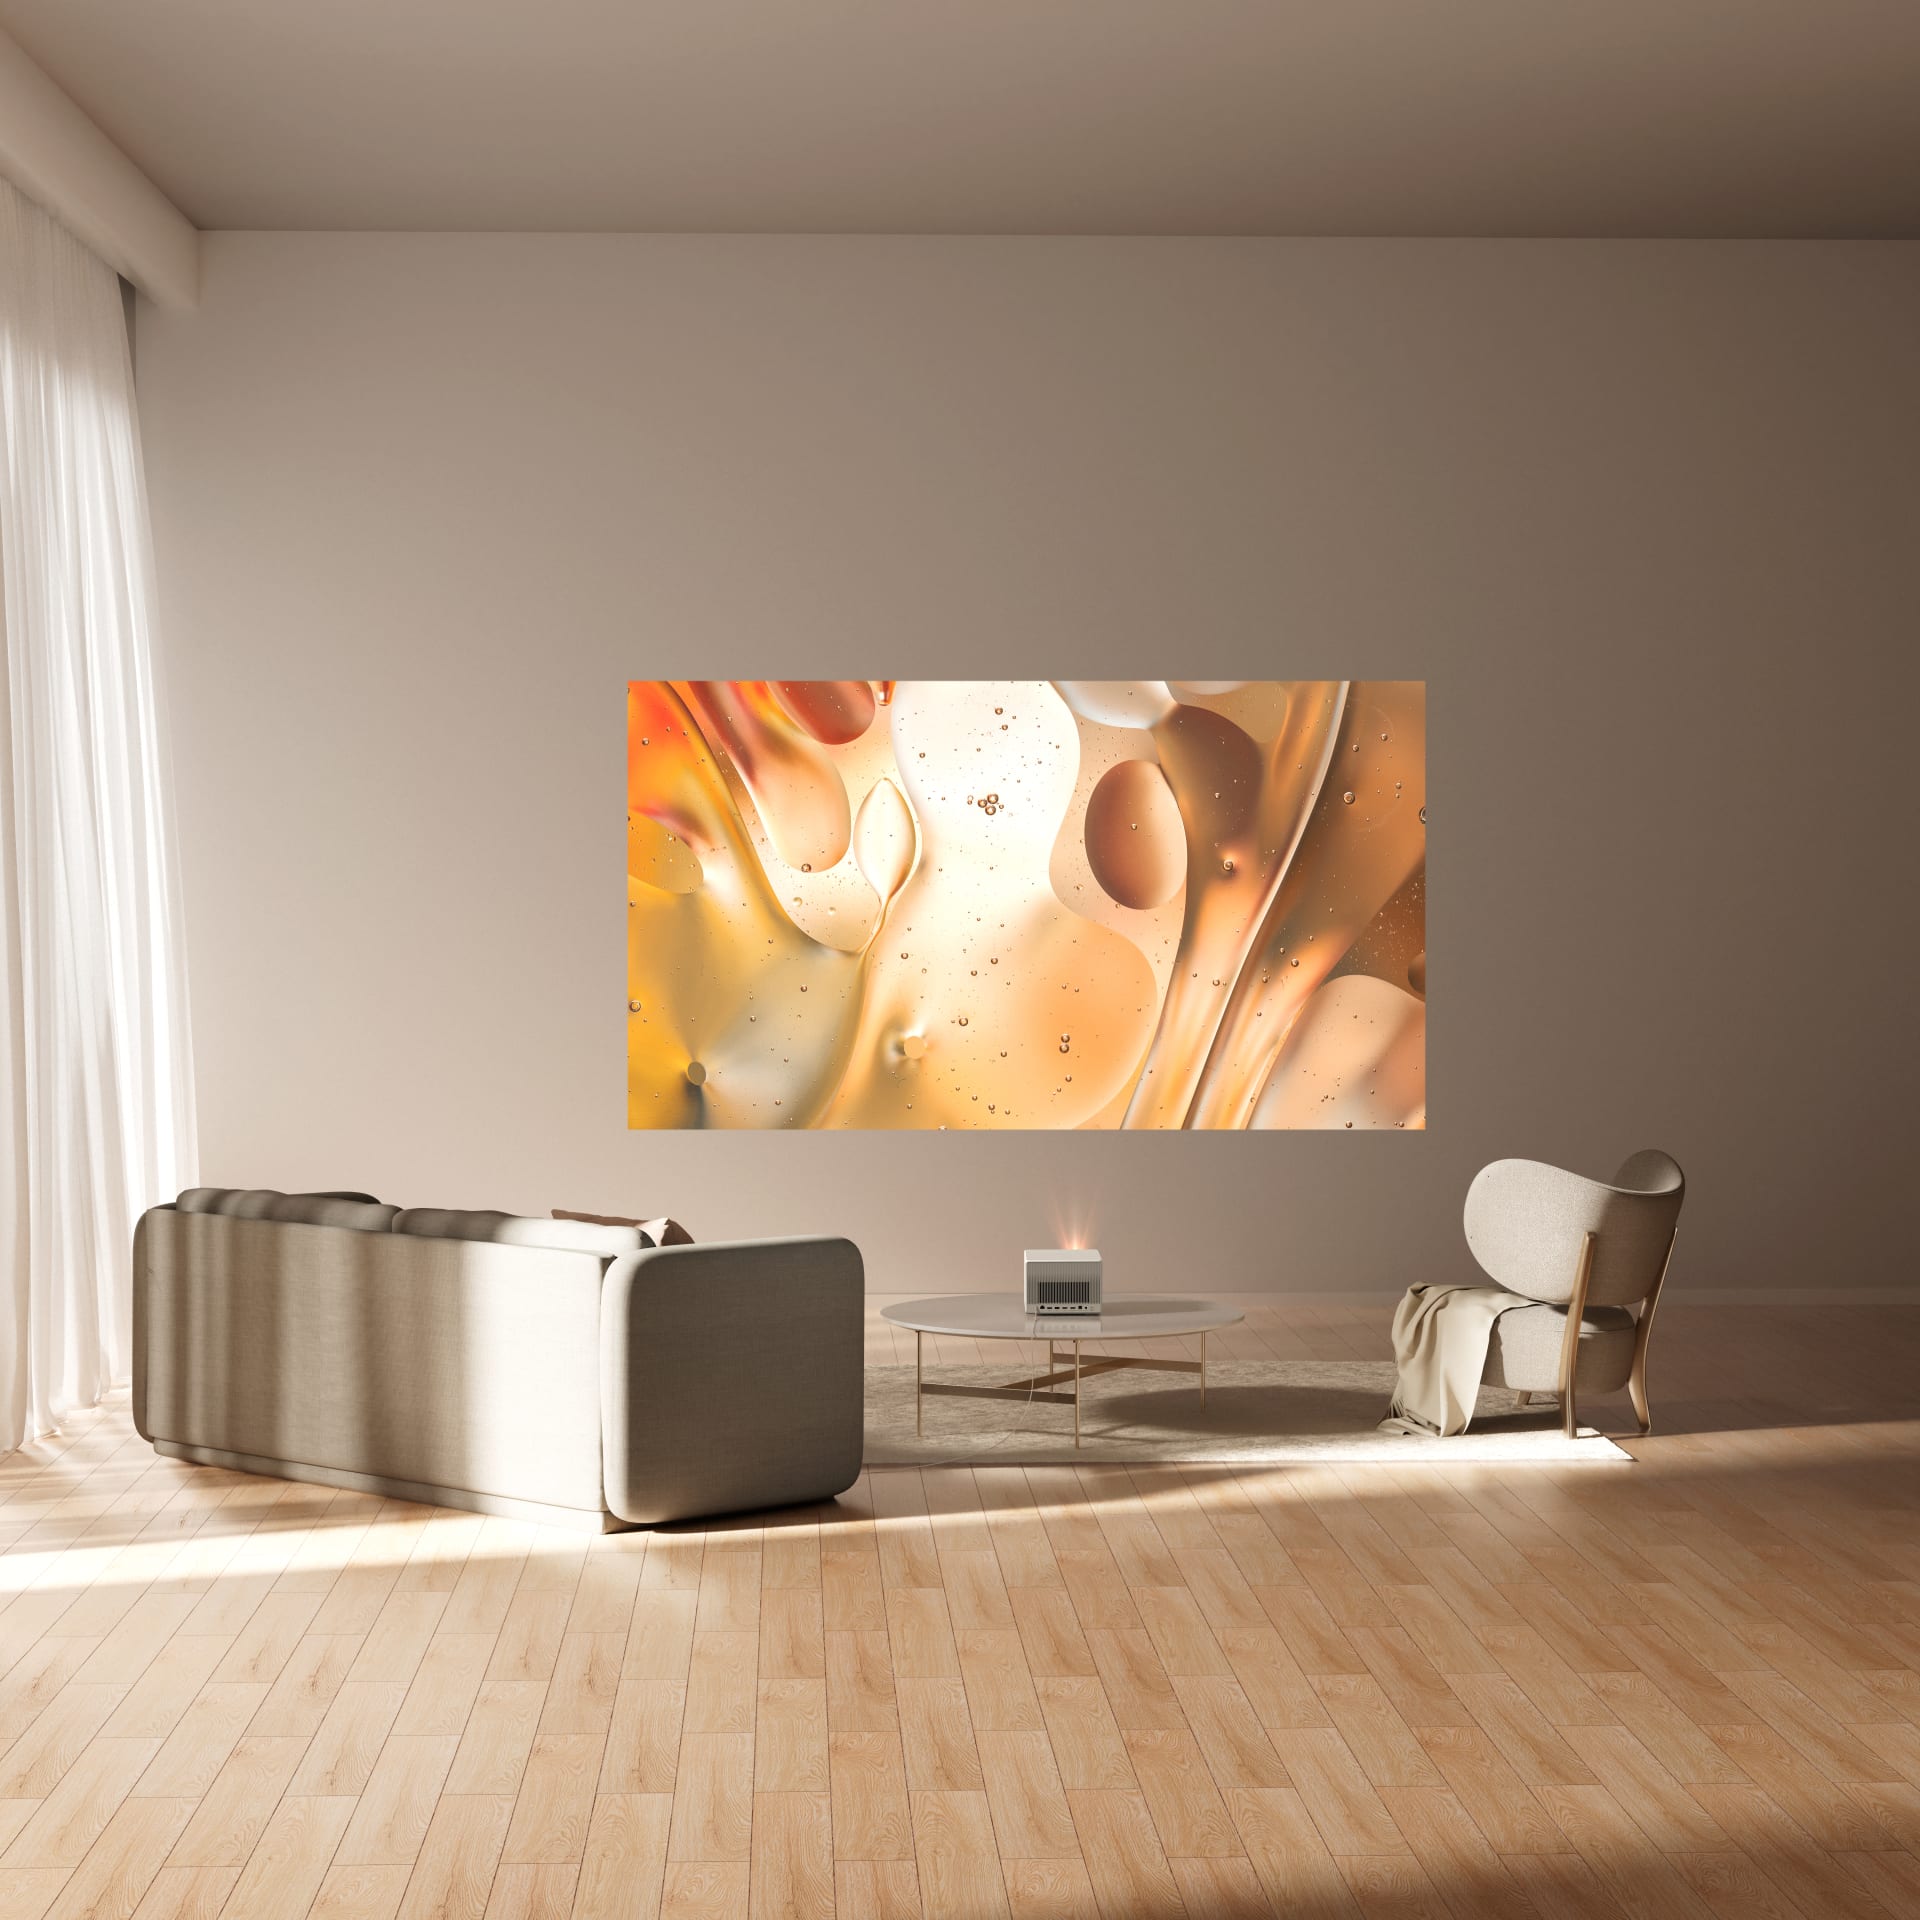 Nový projektor XGIMI HORIZON Ultra překvapí kvalitou obrazu i funkcemi